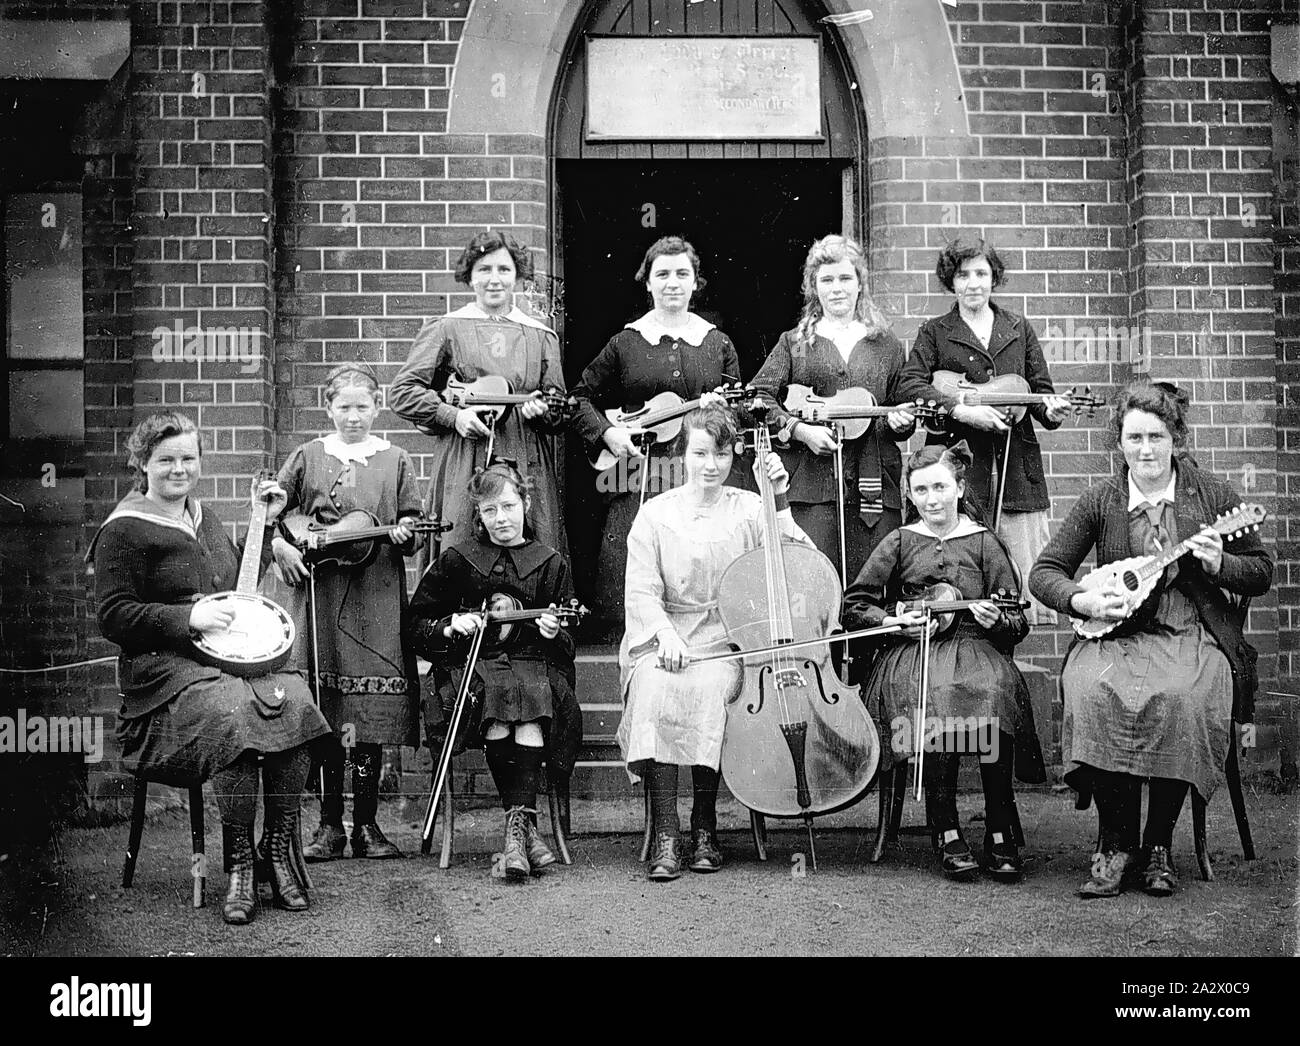 Negativo - Casterton, Victoria, 1920, un gruppo di studentesse, con i loro strumenti musicali, sui gradini del convento della misericordia. Sette ragazze di tenere i violini, uno un banjo, uno un mandolino e uno un violoncello Foto Stock